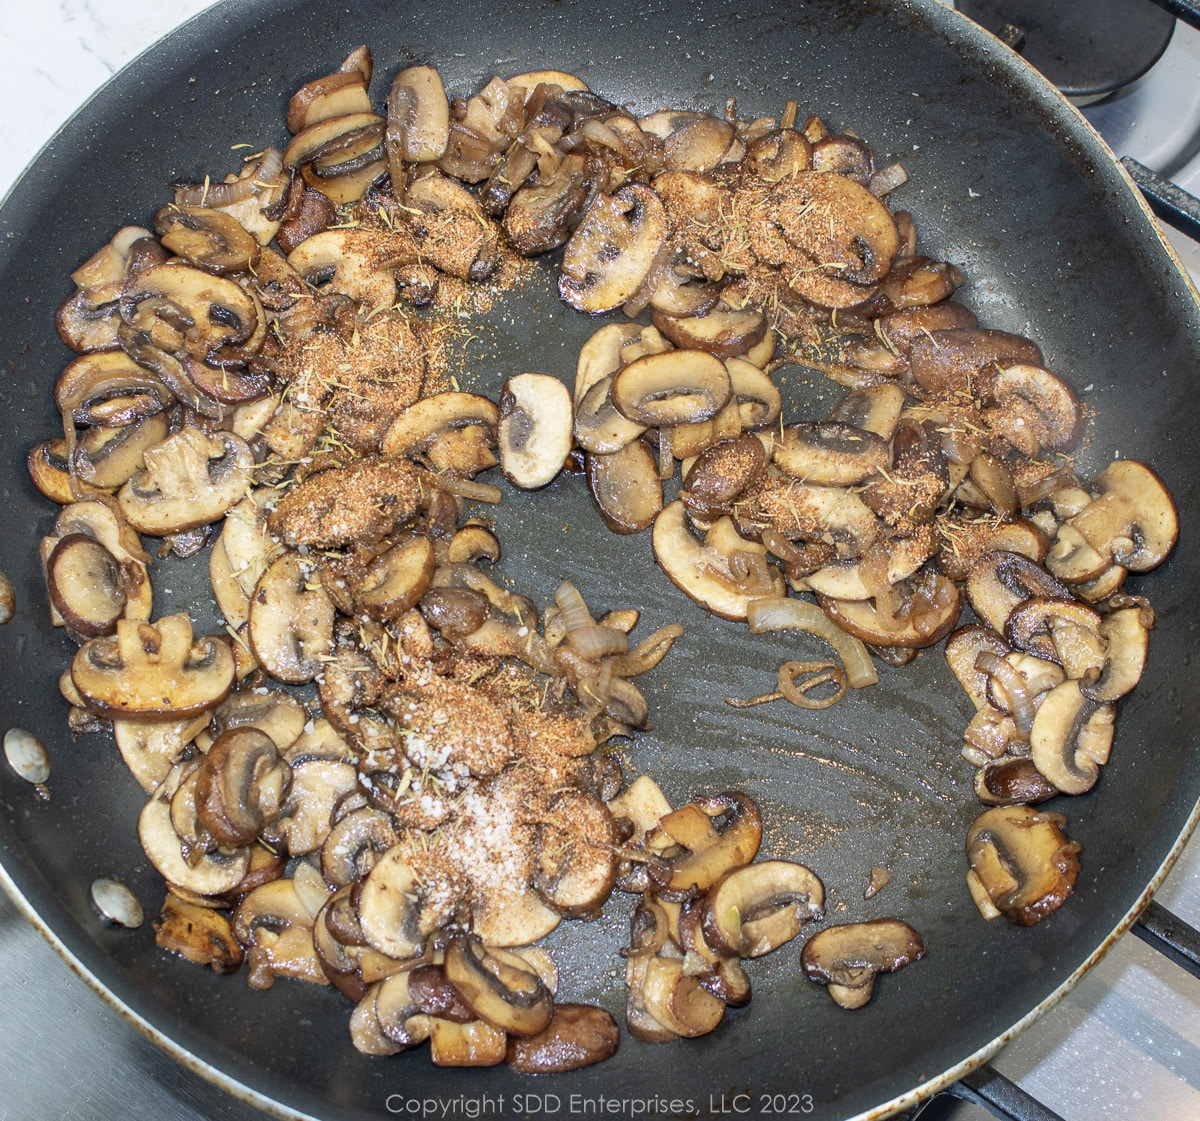 seasonings added to mushrooms on a frying pan